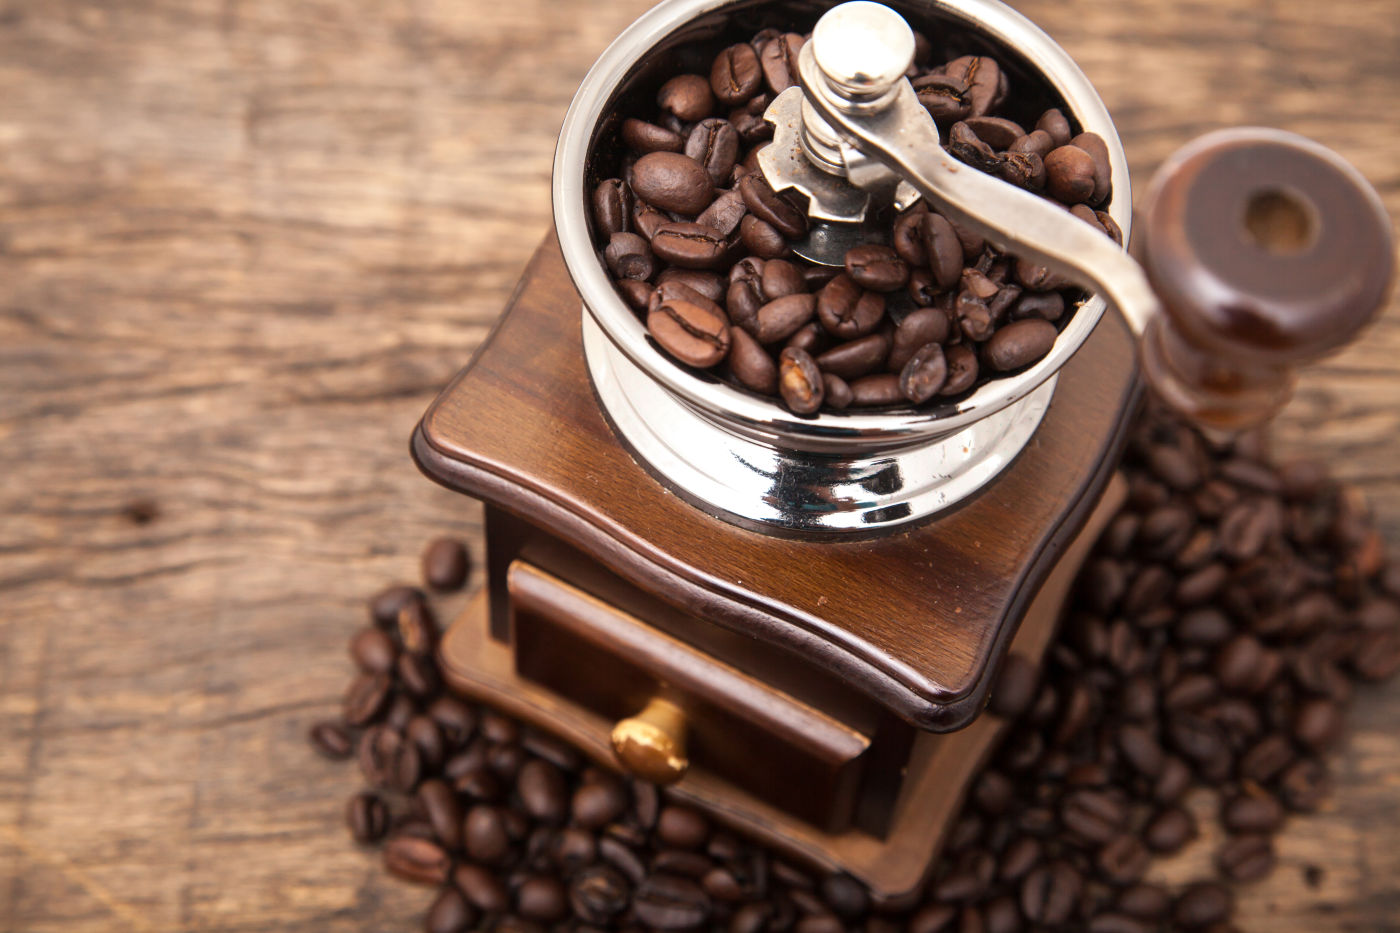 Фото с кофе. Кофе. Натуральный зерновой кофе. Кофе зерна кофемолка. Кофе и кофейные зерна.